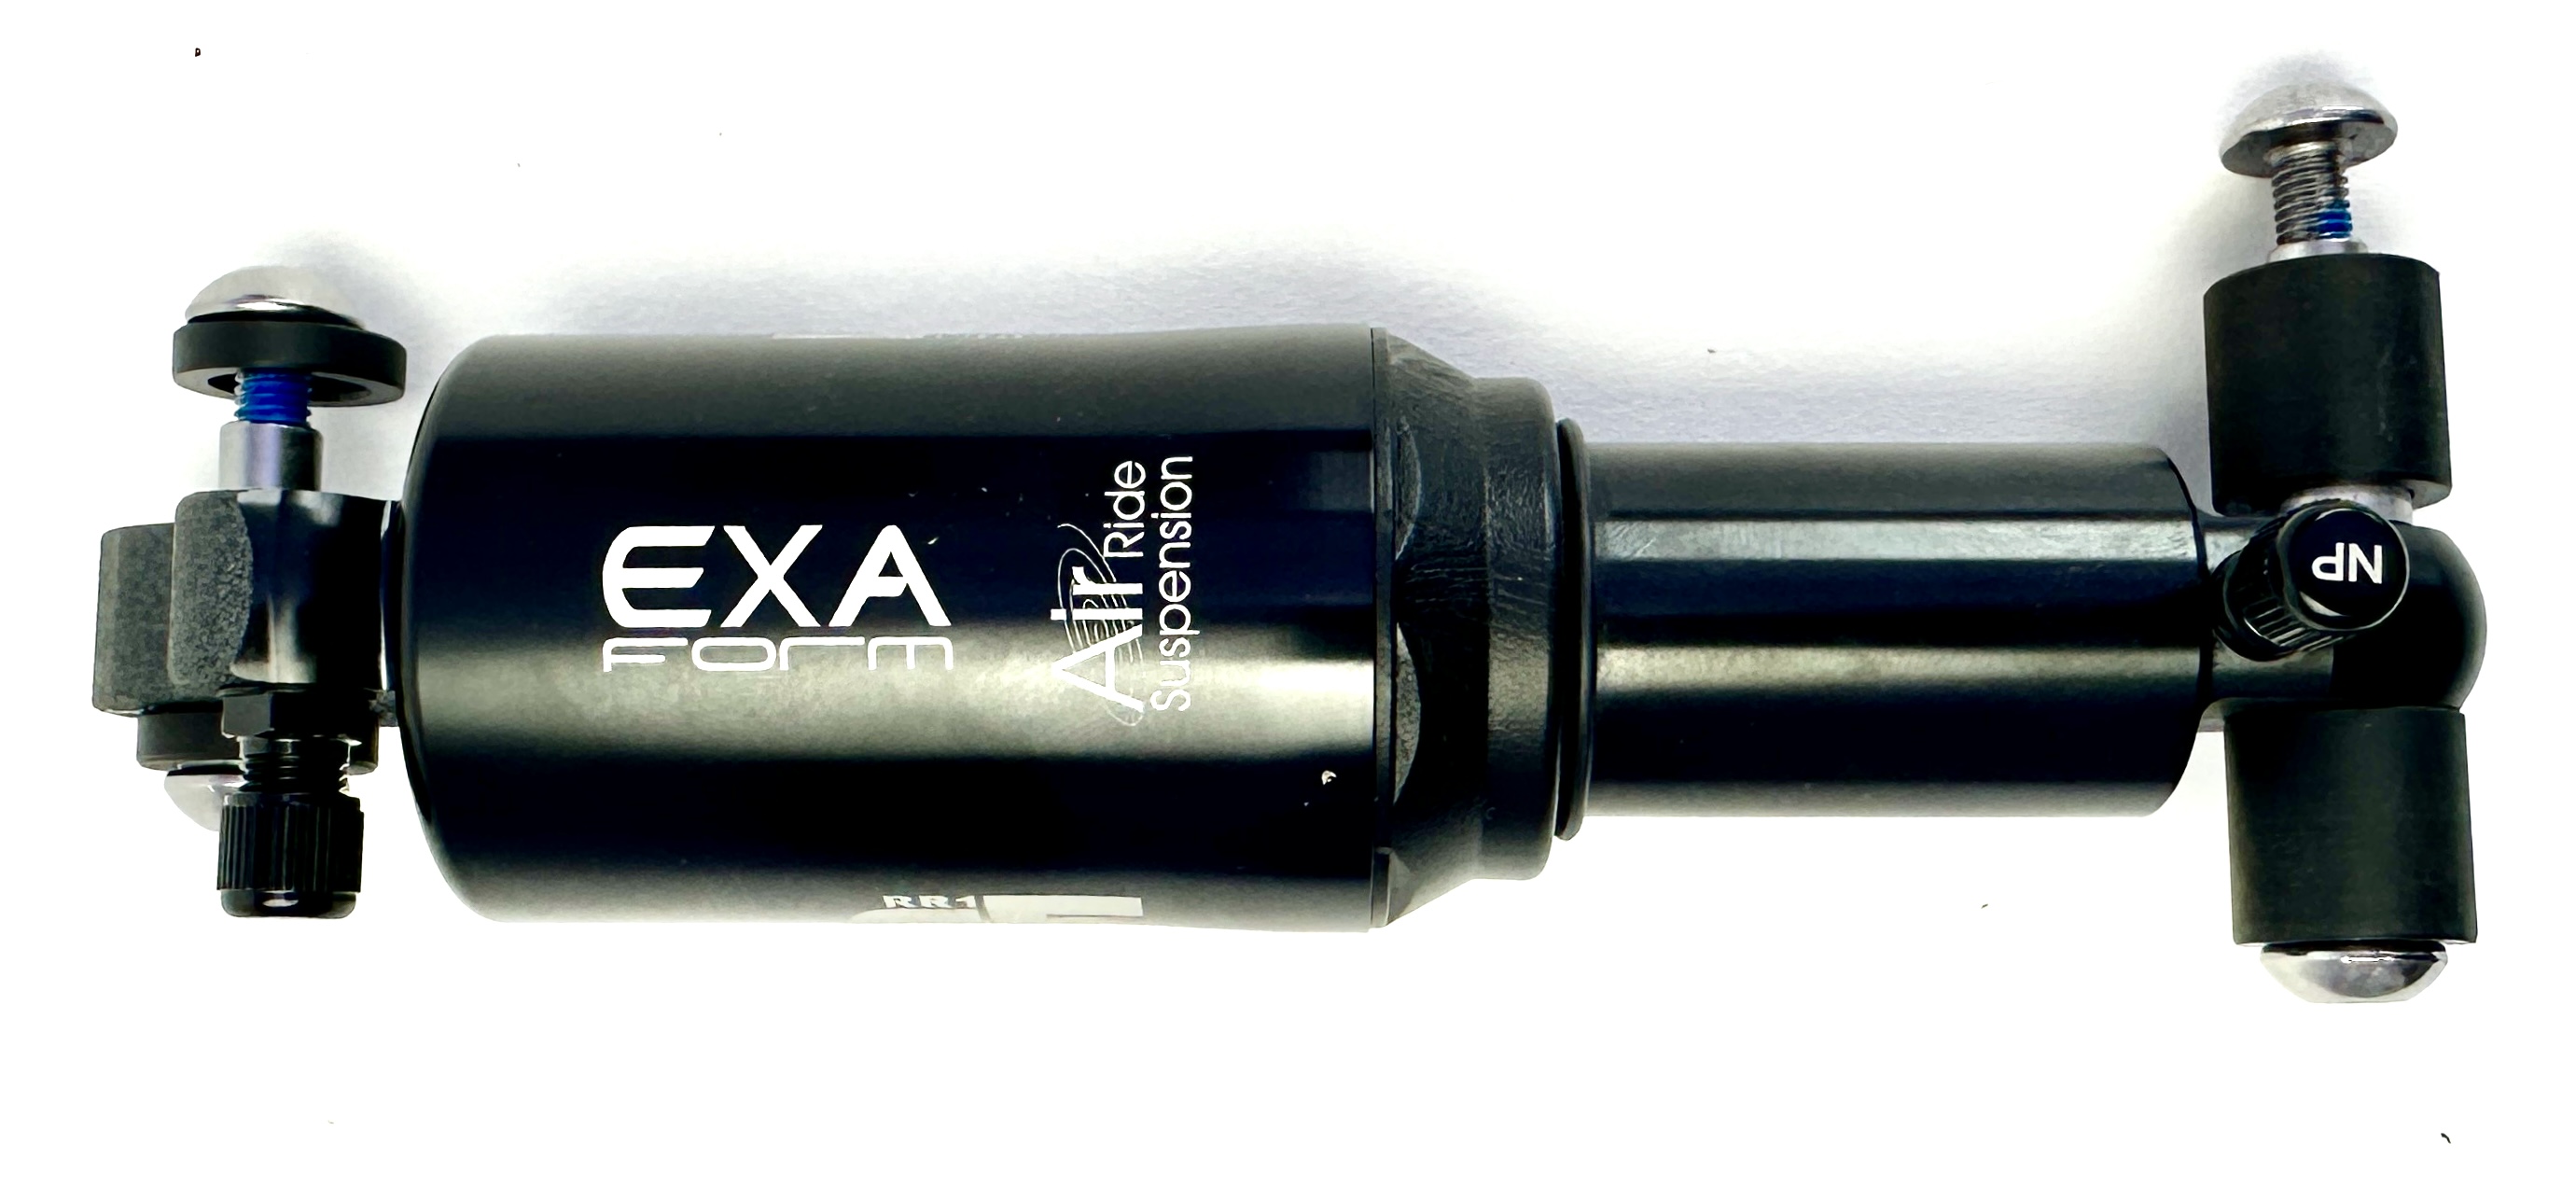 Amortisseur pneumatique EXA Form A5RR1 par Kindshock